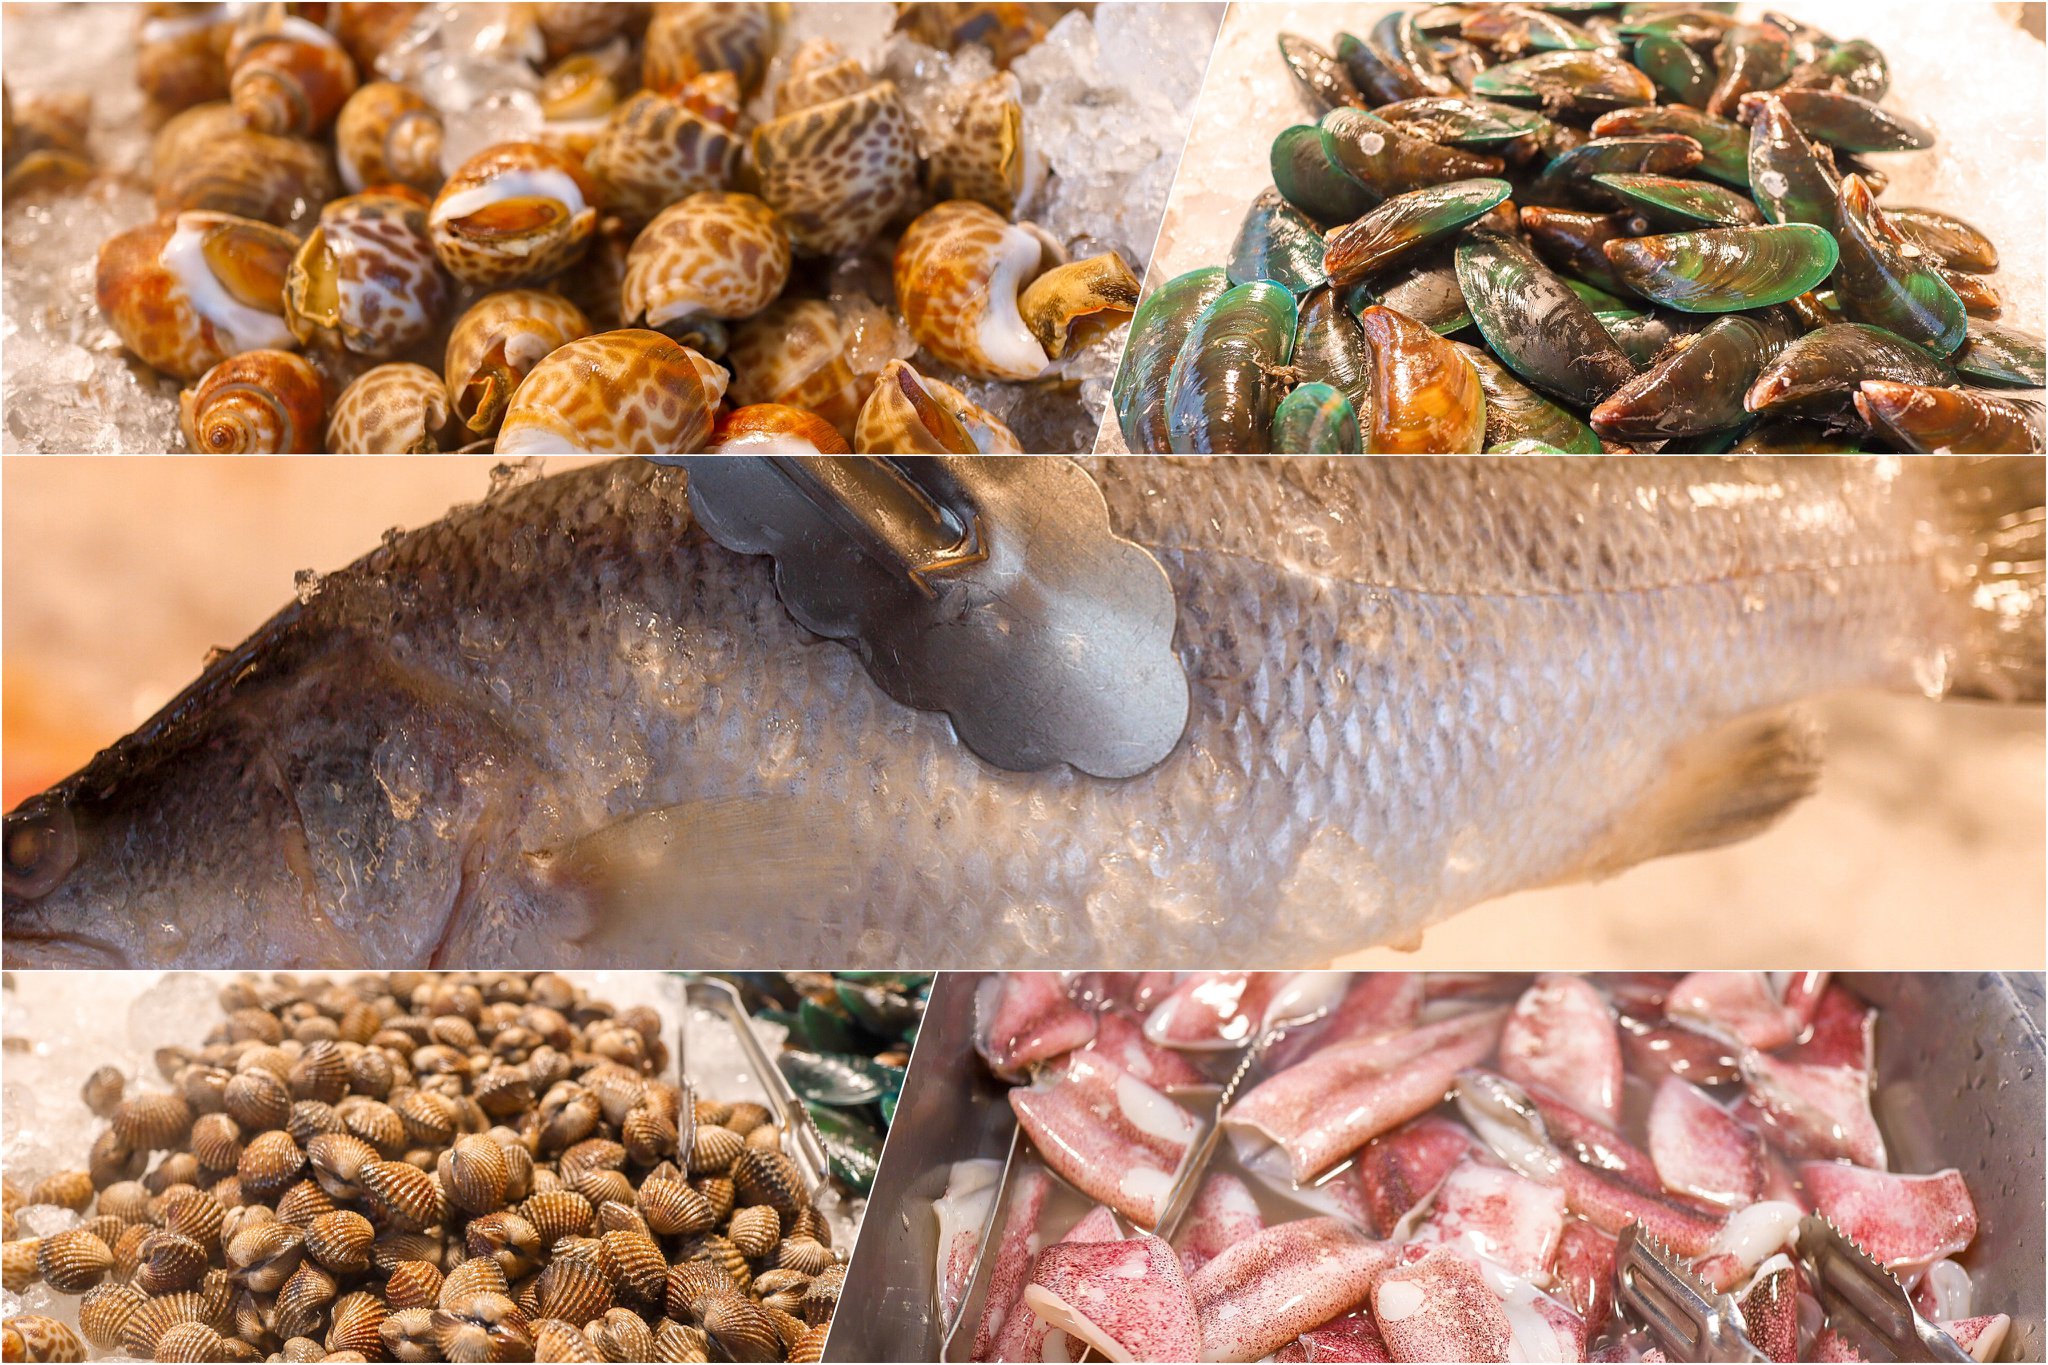  หอย-ปลาหมึก-ปลา บุฟเฟ่ต์,ปิ้งย่าง,นครศรีธรรมราช,ของกิน,อำเภอเมือง